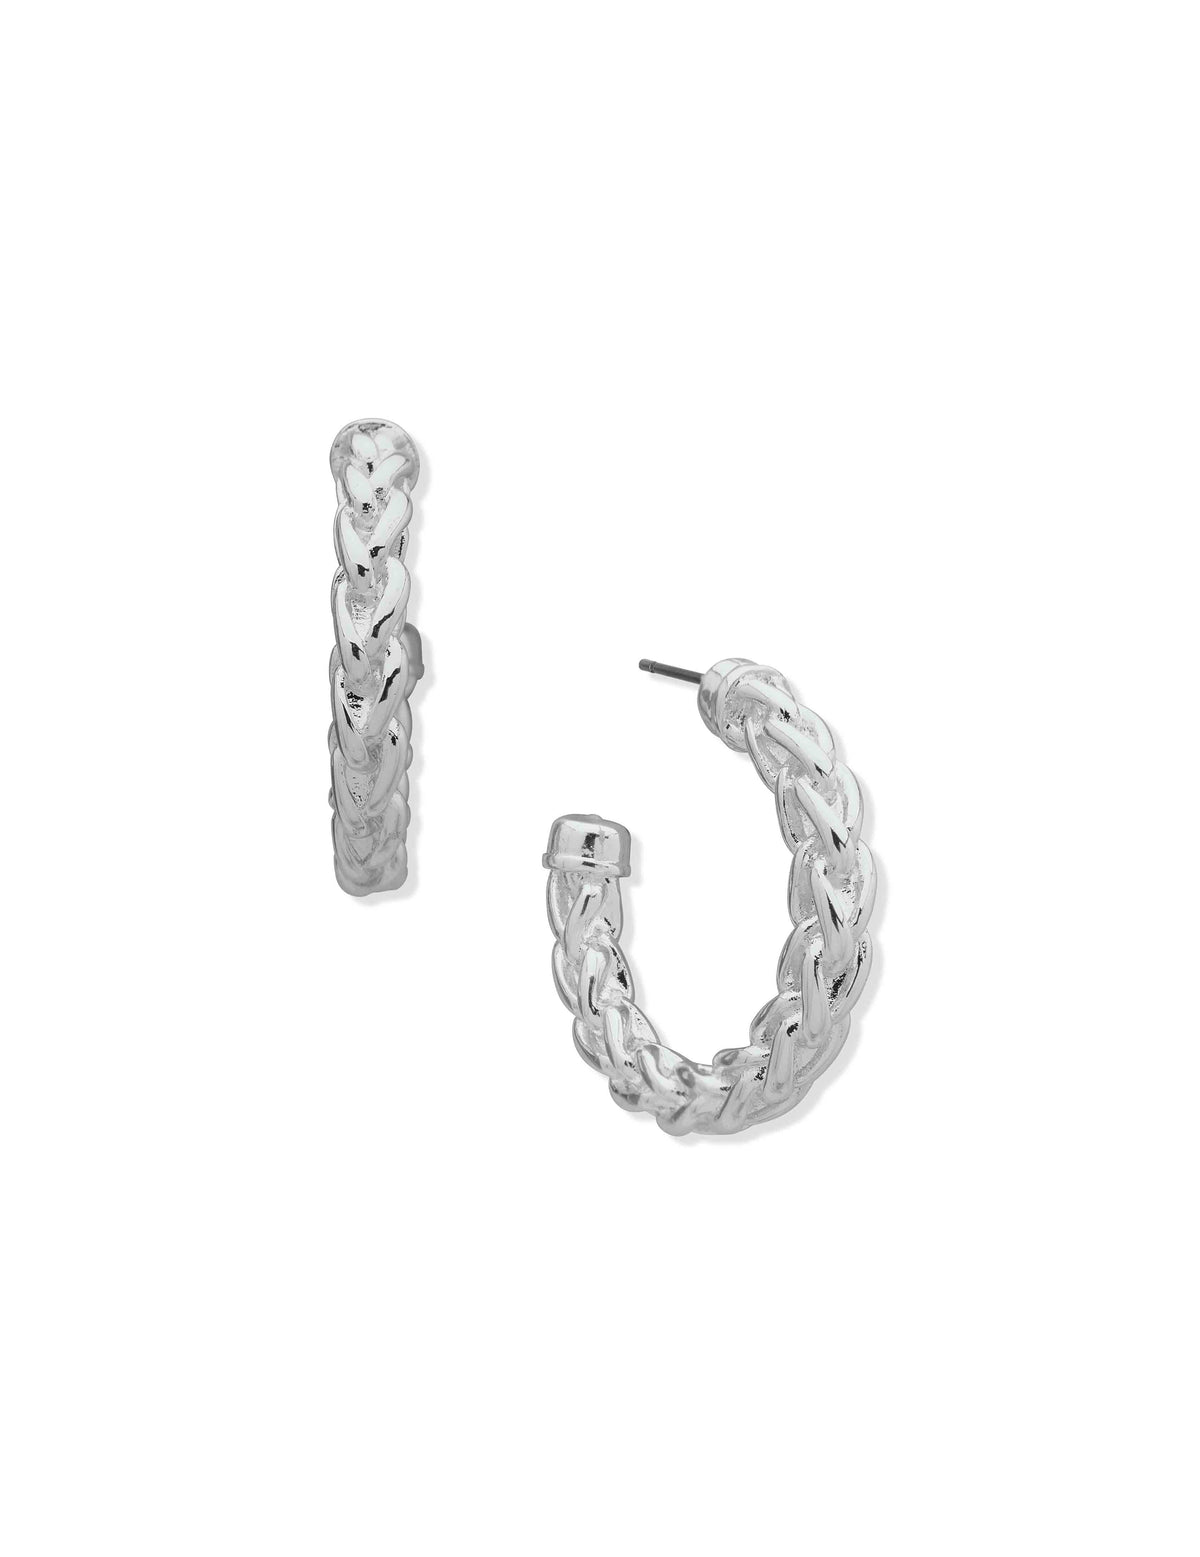 Anne Klein Silver Tone Woven Chain Hoop Earring